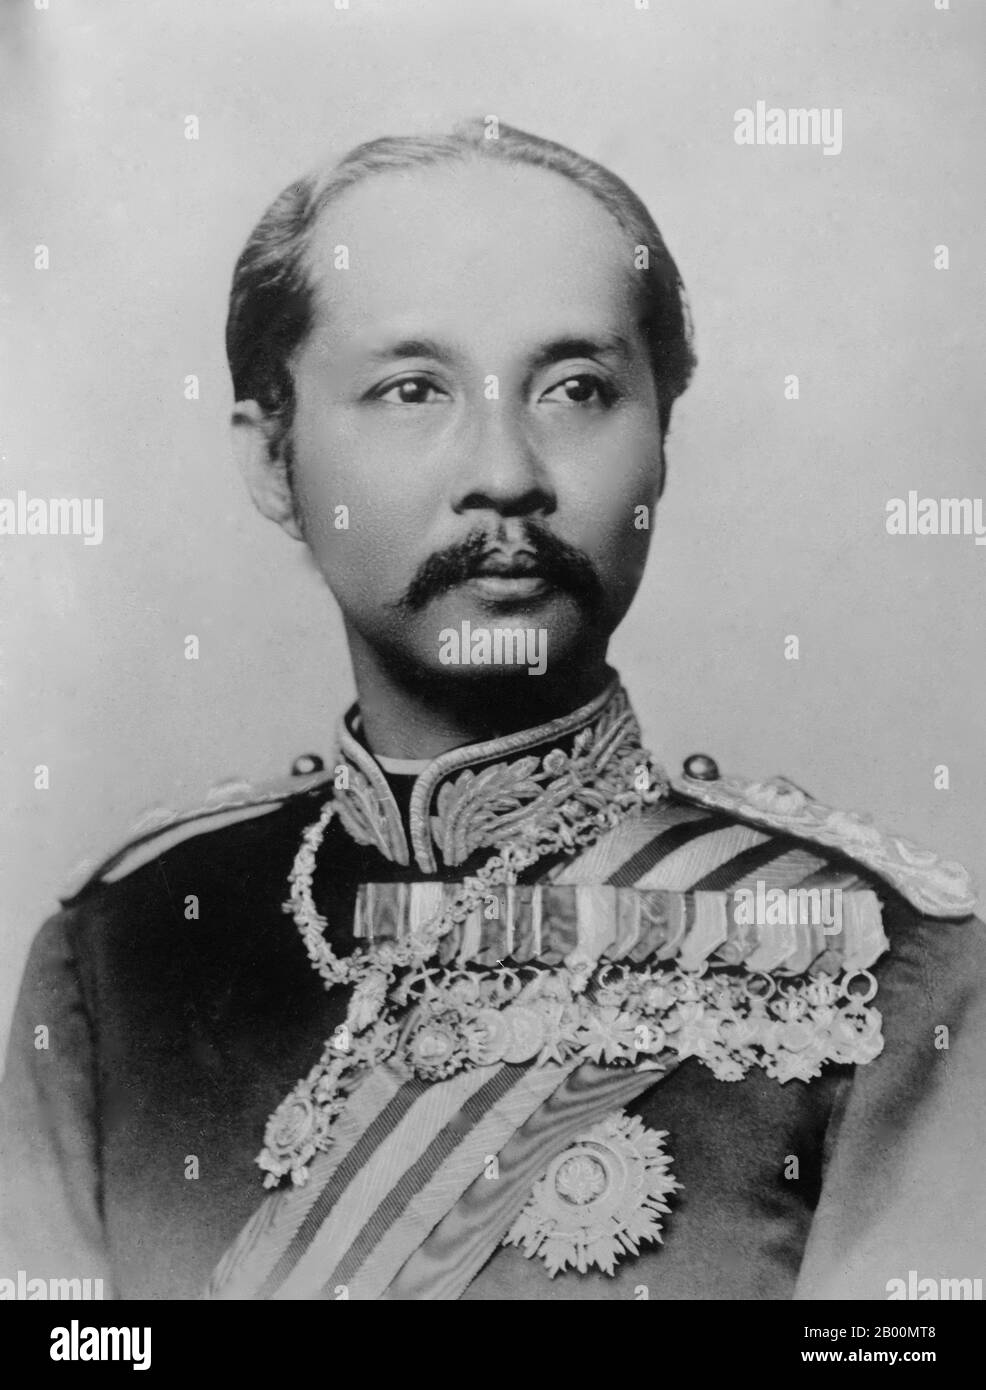 Thailandia: Re Rama V, Chulalongkorn (1 ottobre 1868 – 23 ottobre 1910), quinto monarca della dinastia Chakri. Phra Bat Somdet Phra Poramintharamaha Chulalongkorn Phra Chunla Chom Klao Chao Yu Hua, o Rama V (20 settembre 1853 – 23 ottobre 1910), è stato il quinto monarca del Siam sotto la Casa di Chakri. È considerato uno dei più grandi re del Siam. Il suo regno fu caratterizzato dalla modernizzazione del Siam, da immense riforme governative e sociali, e da cessioni territoriali all'Impero britannico e all'Indochina francese. Chulalongkorn, attraverso le sue politiche, riuscì a salvare il Siam dal colonizzare. Foto Stock